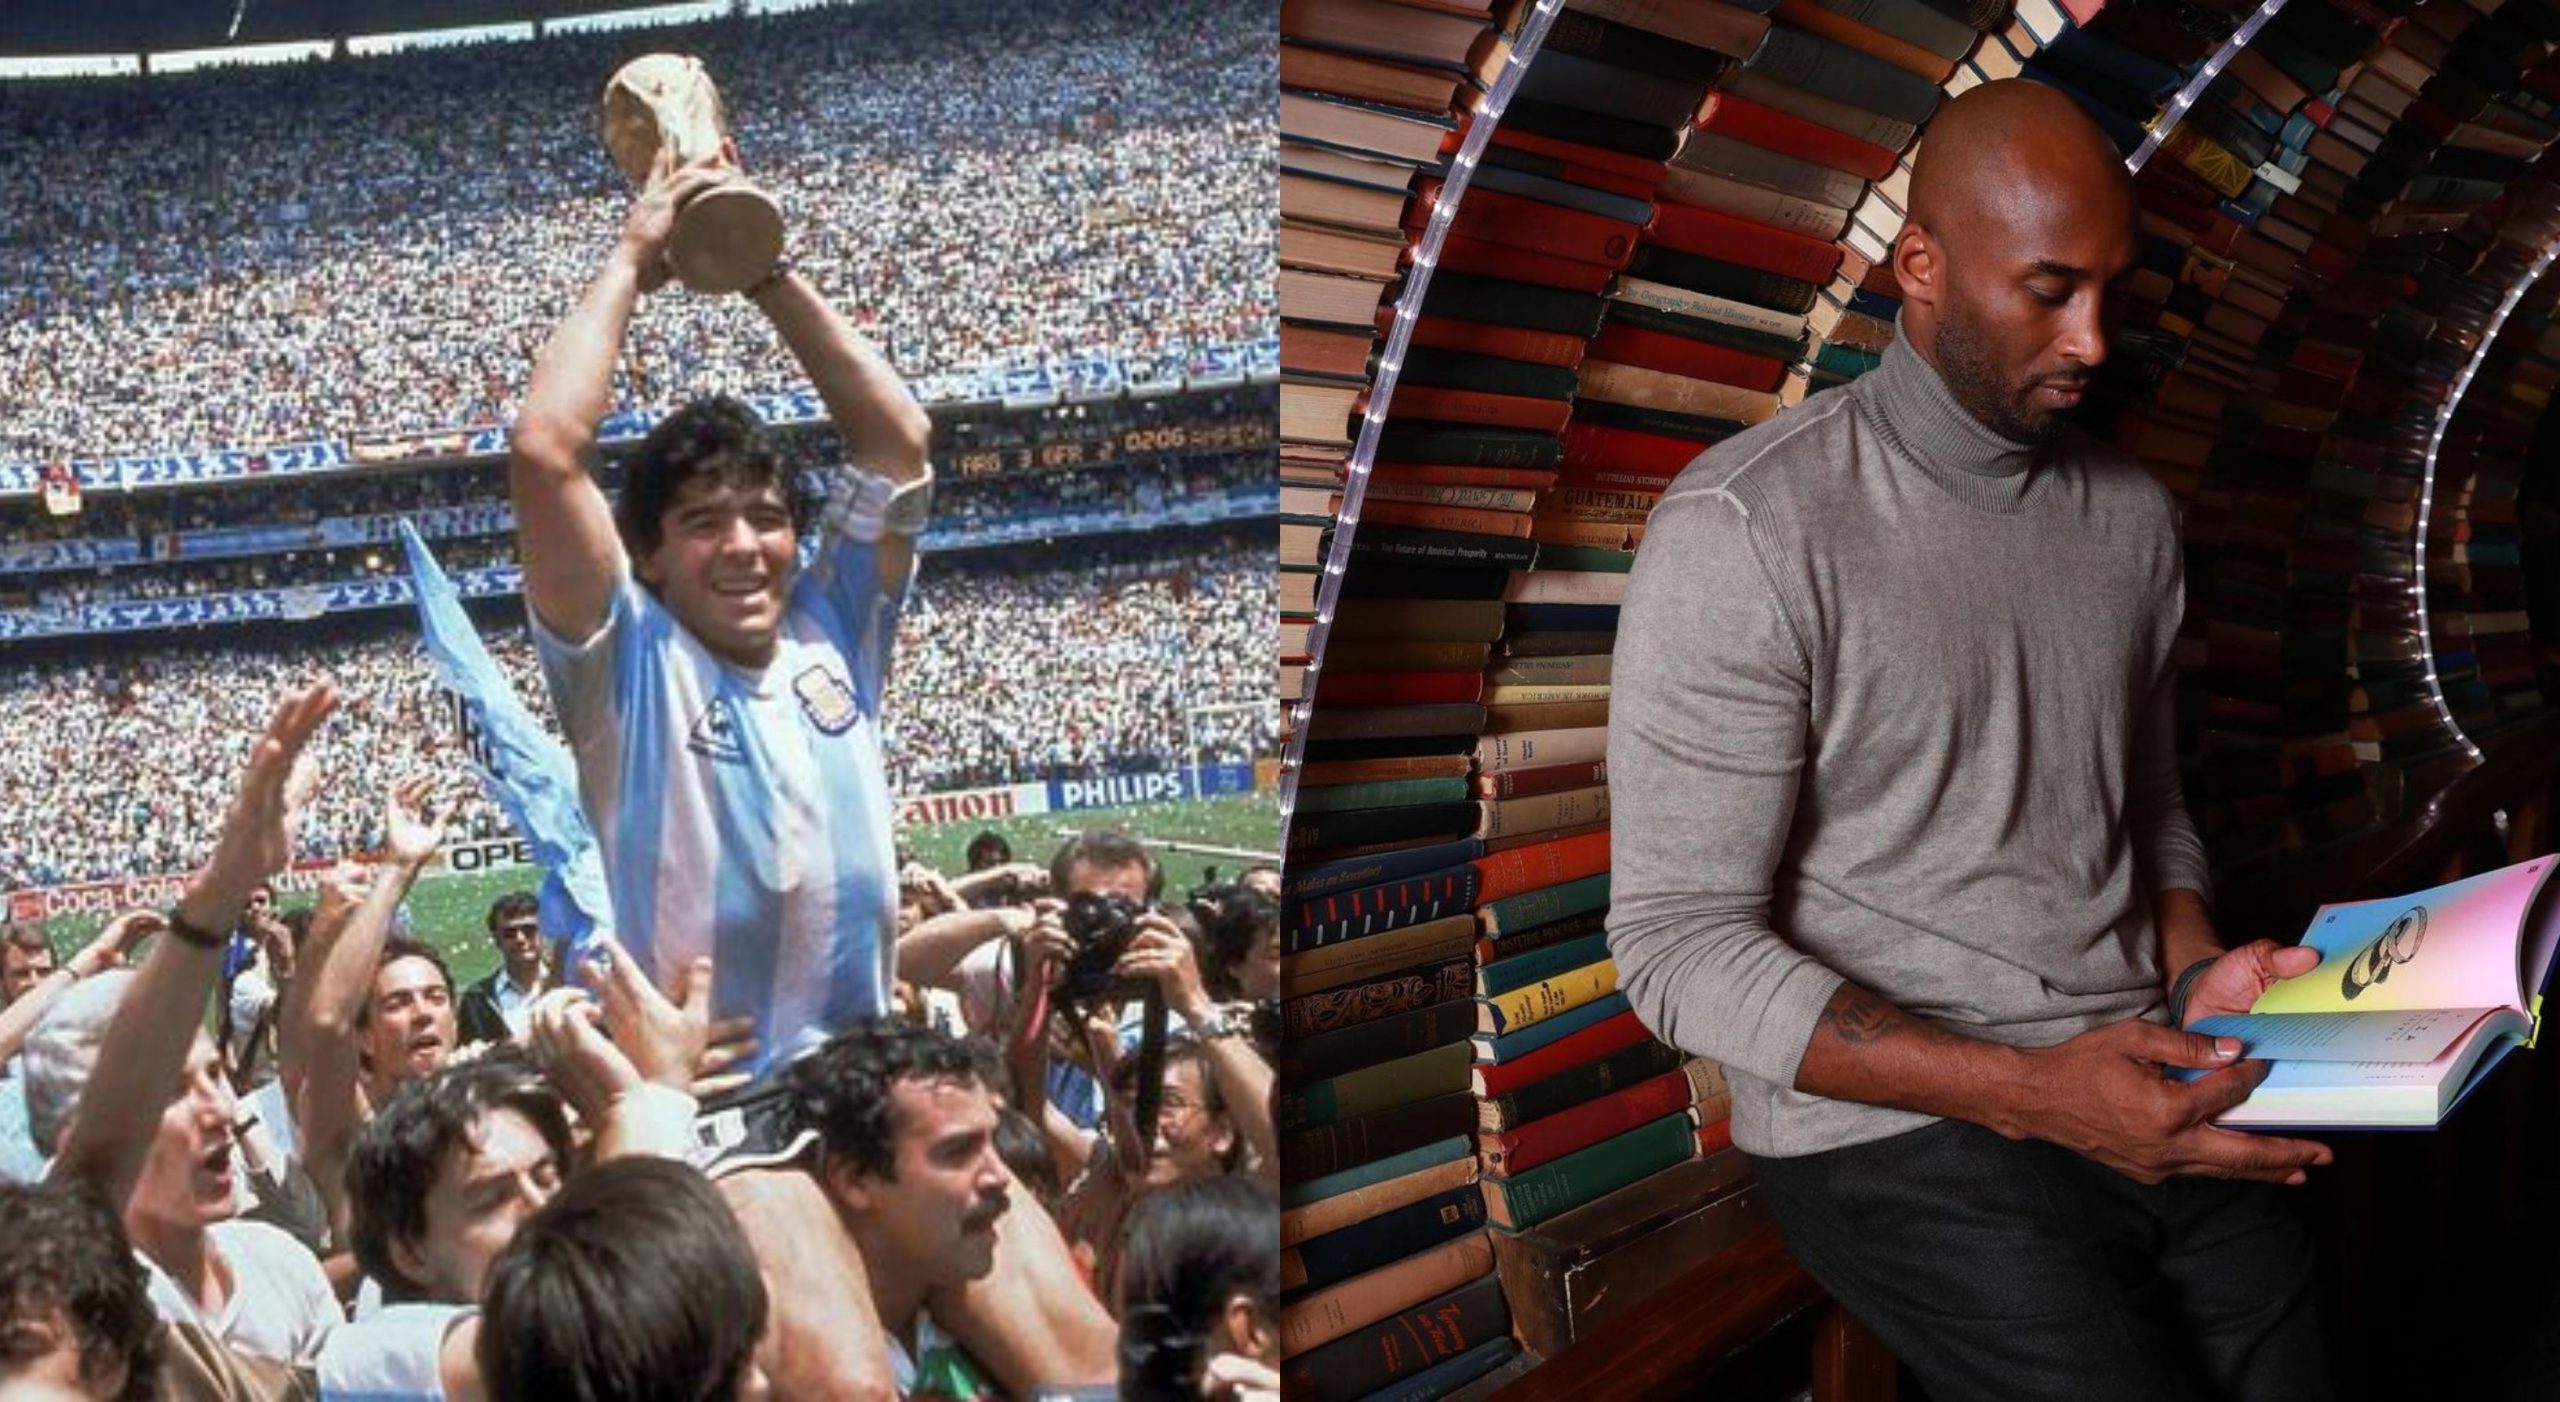 Diego Maradona mourned, Kobe Bryant’s tragedy: Sports deaths in 2020